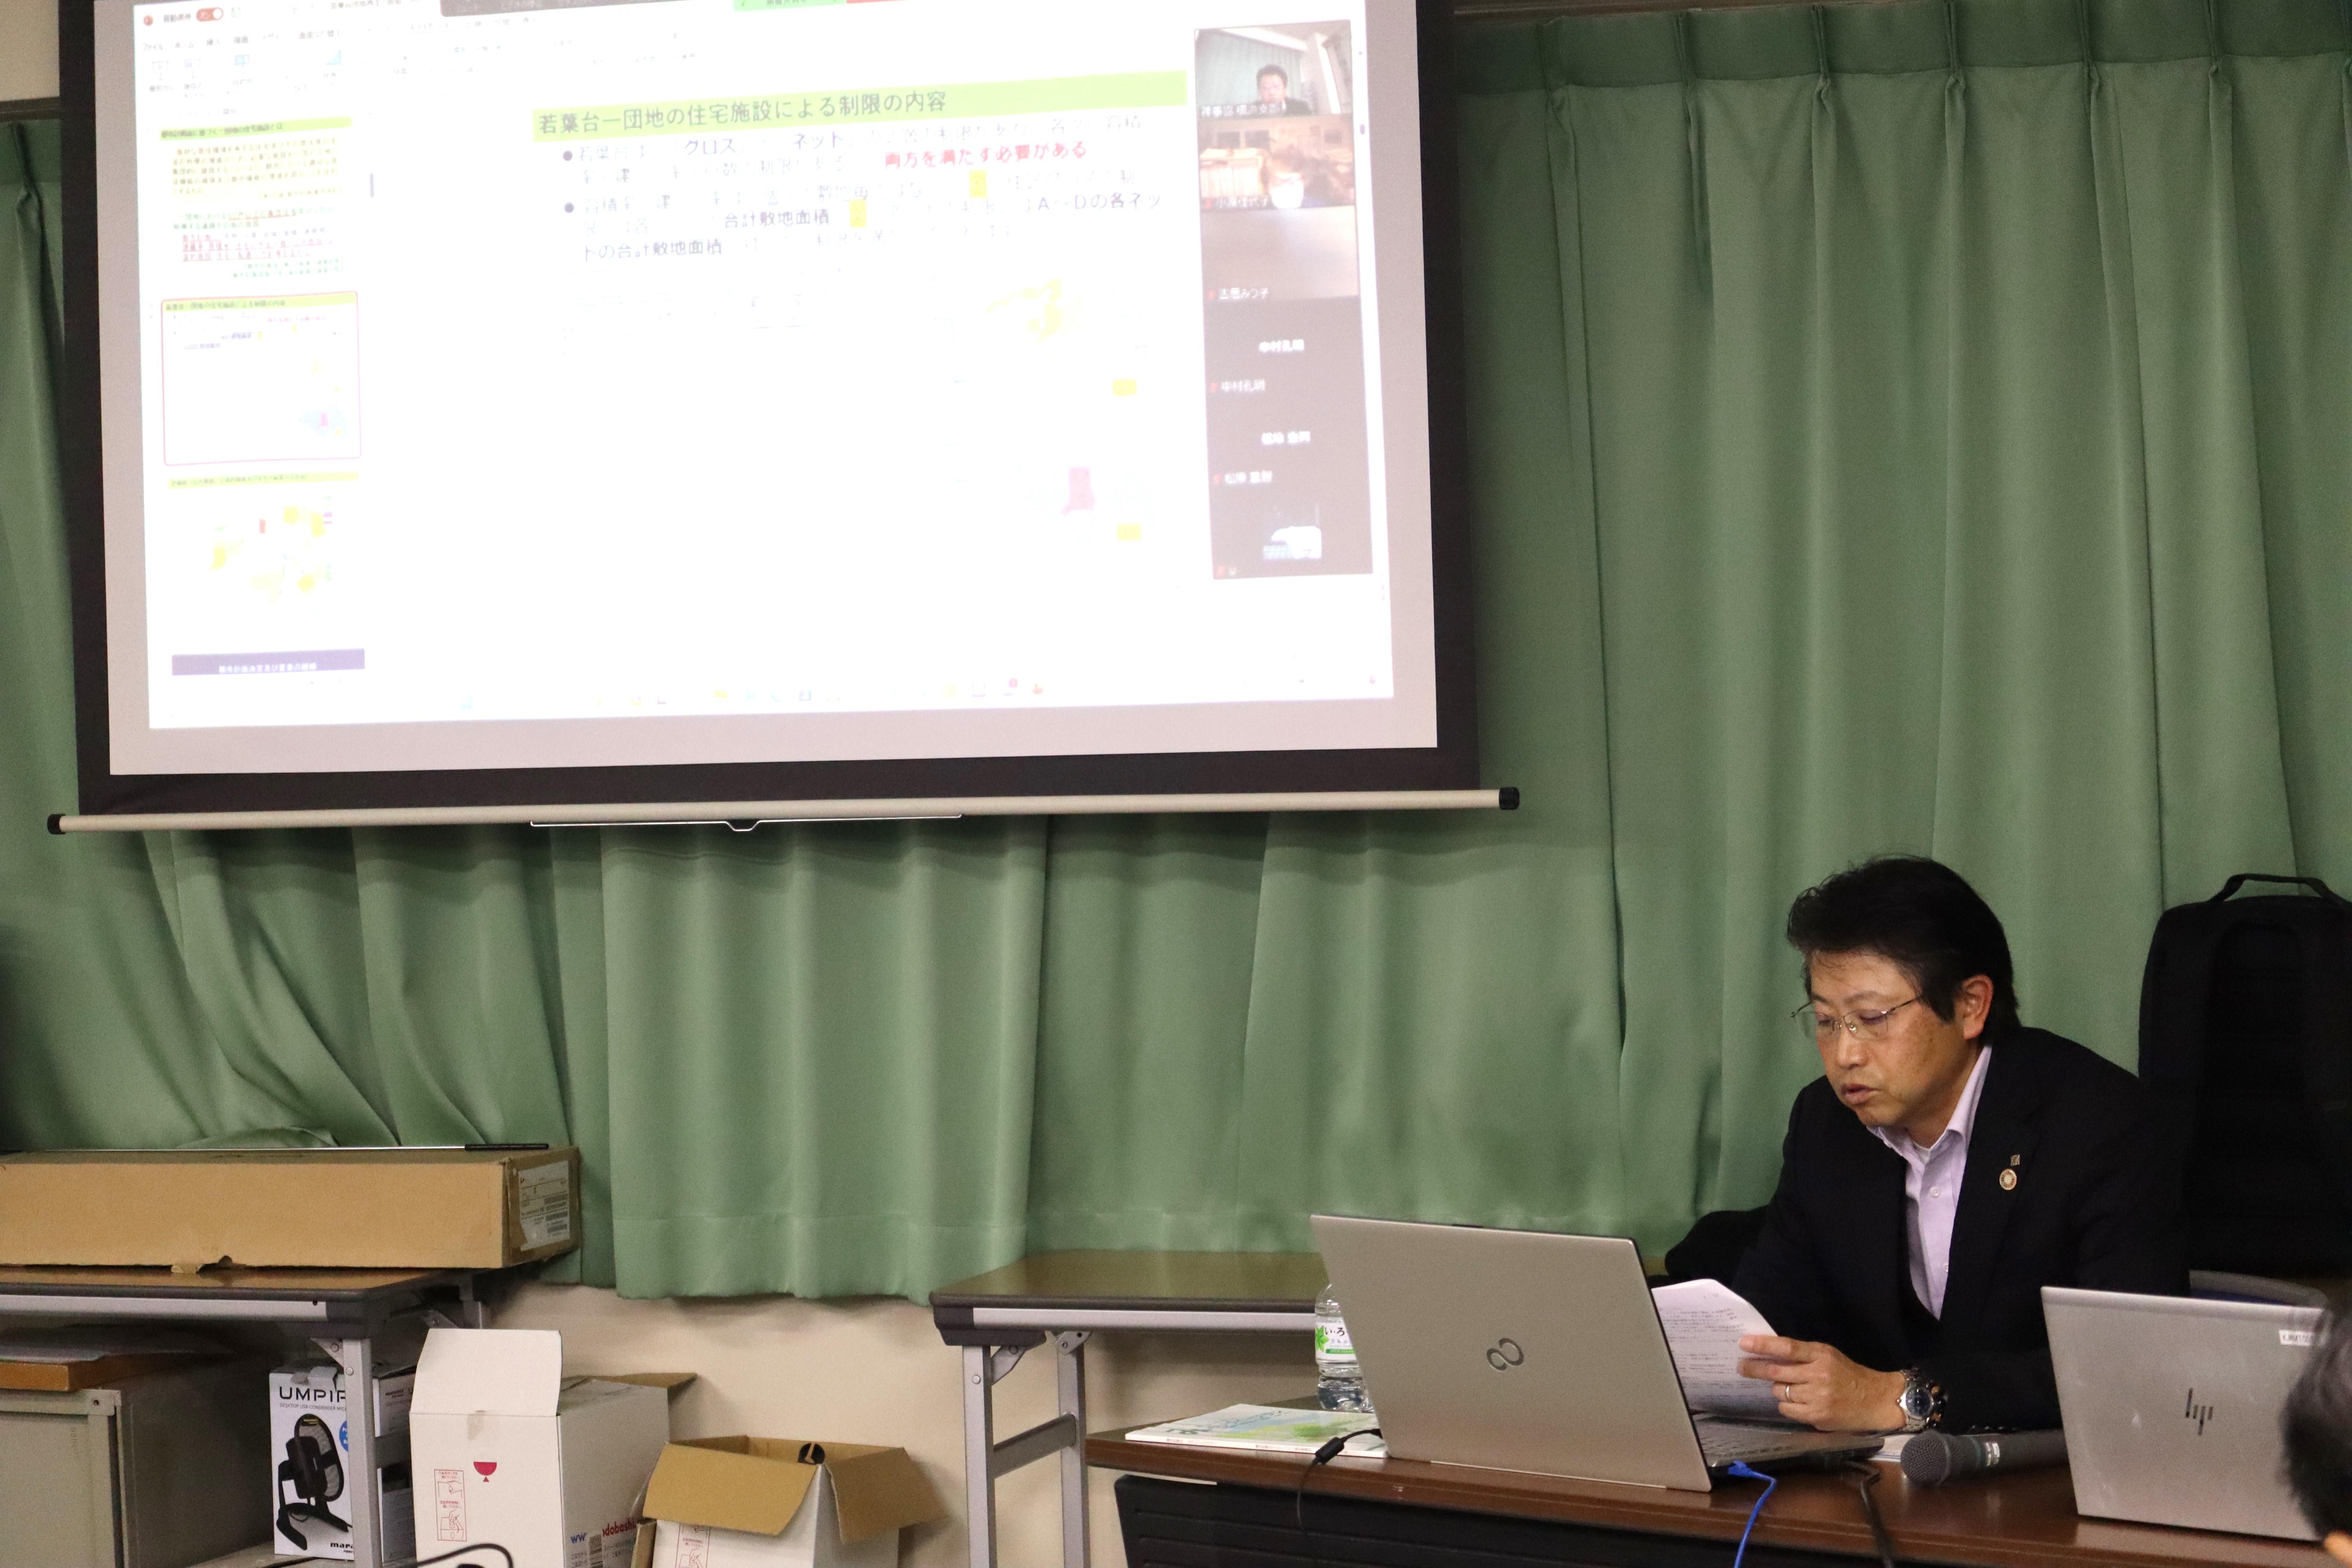 持続可能な神奈川の住まい・まちづくりを考えるセミナー説明.JPG